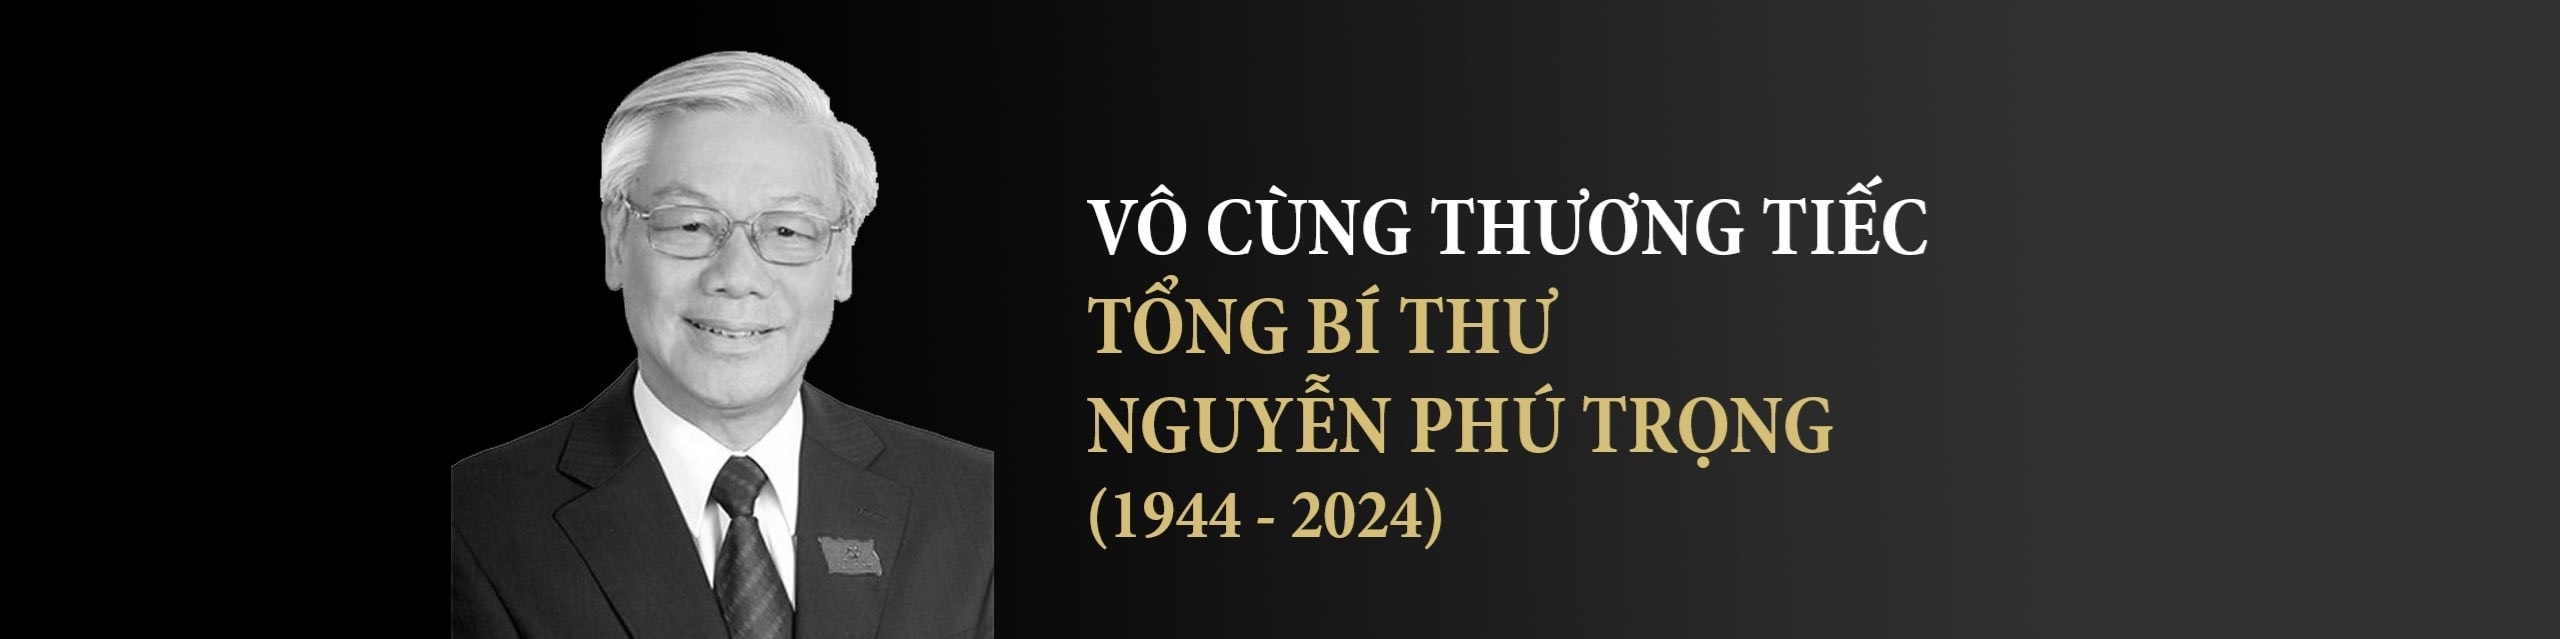 Quốc tang Tổng Bí Thư Nguyễn Phú Trọng